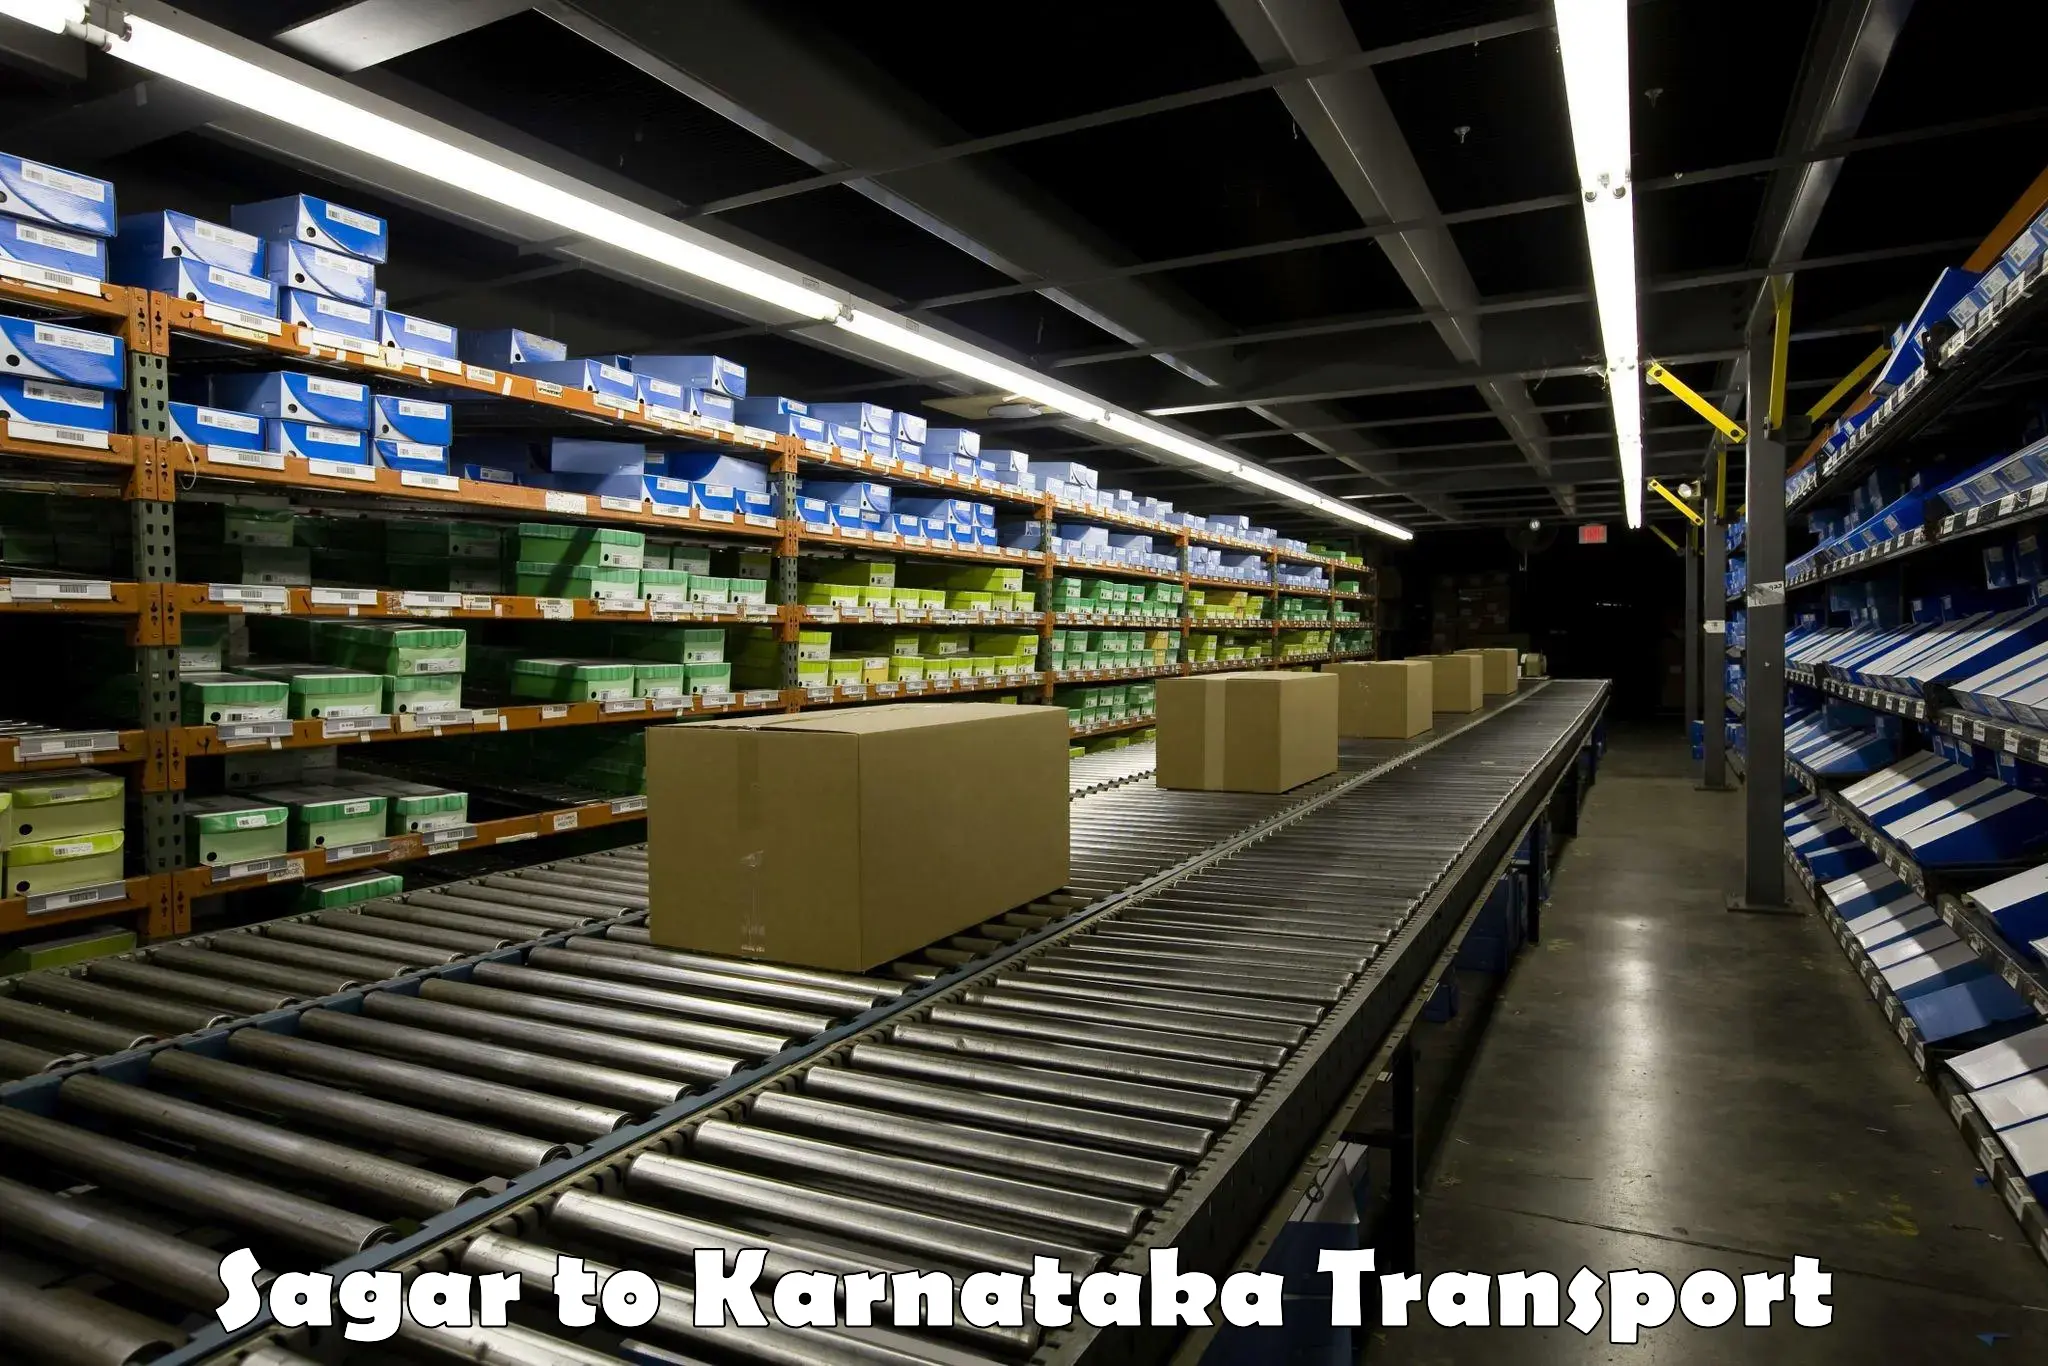 Furniture transport service in Sagar to Karnataka